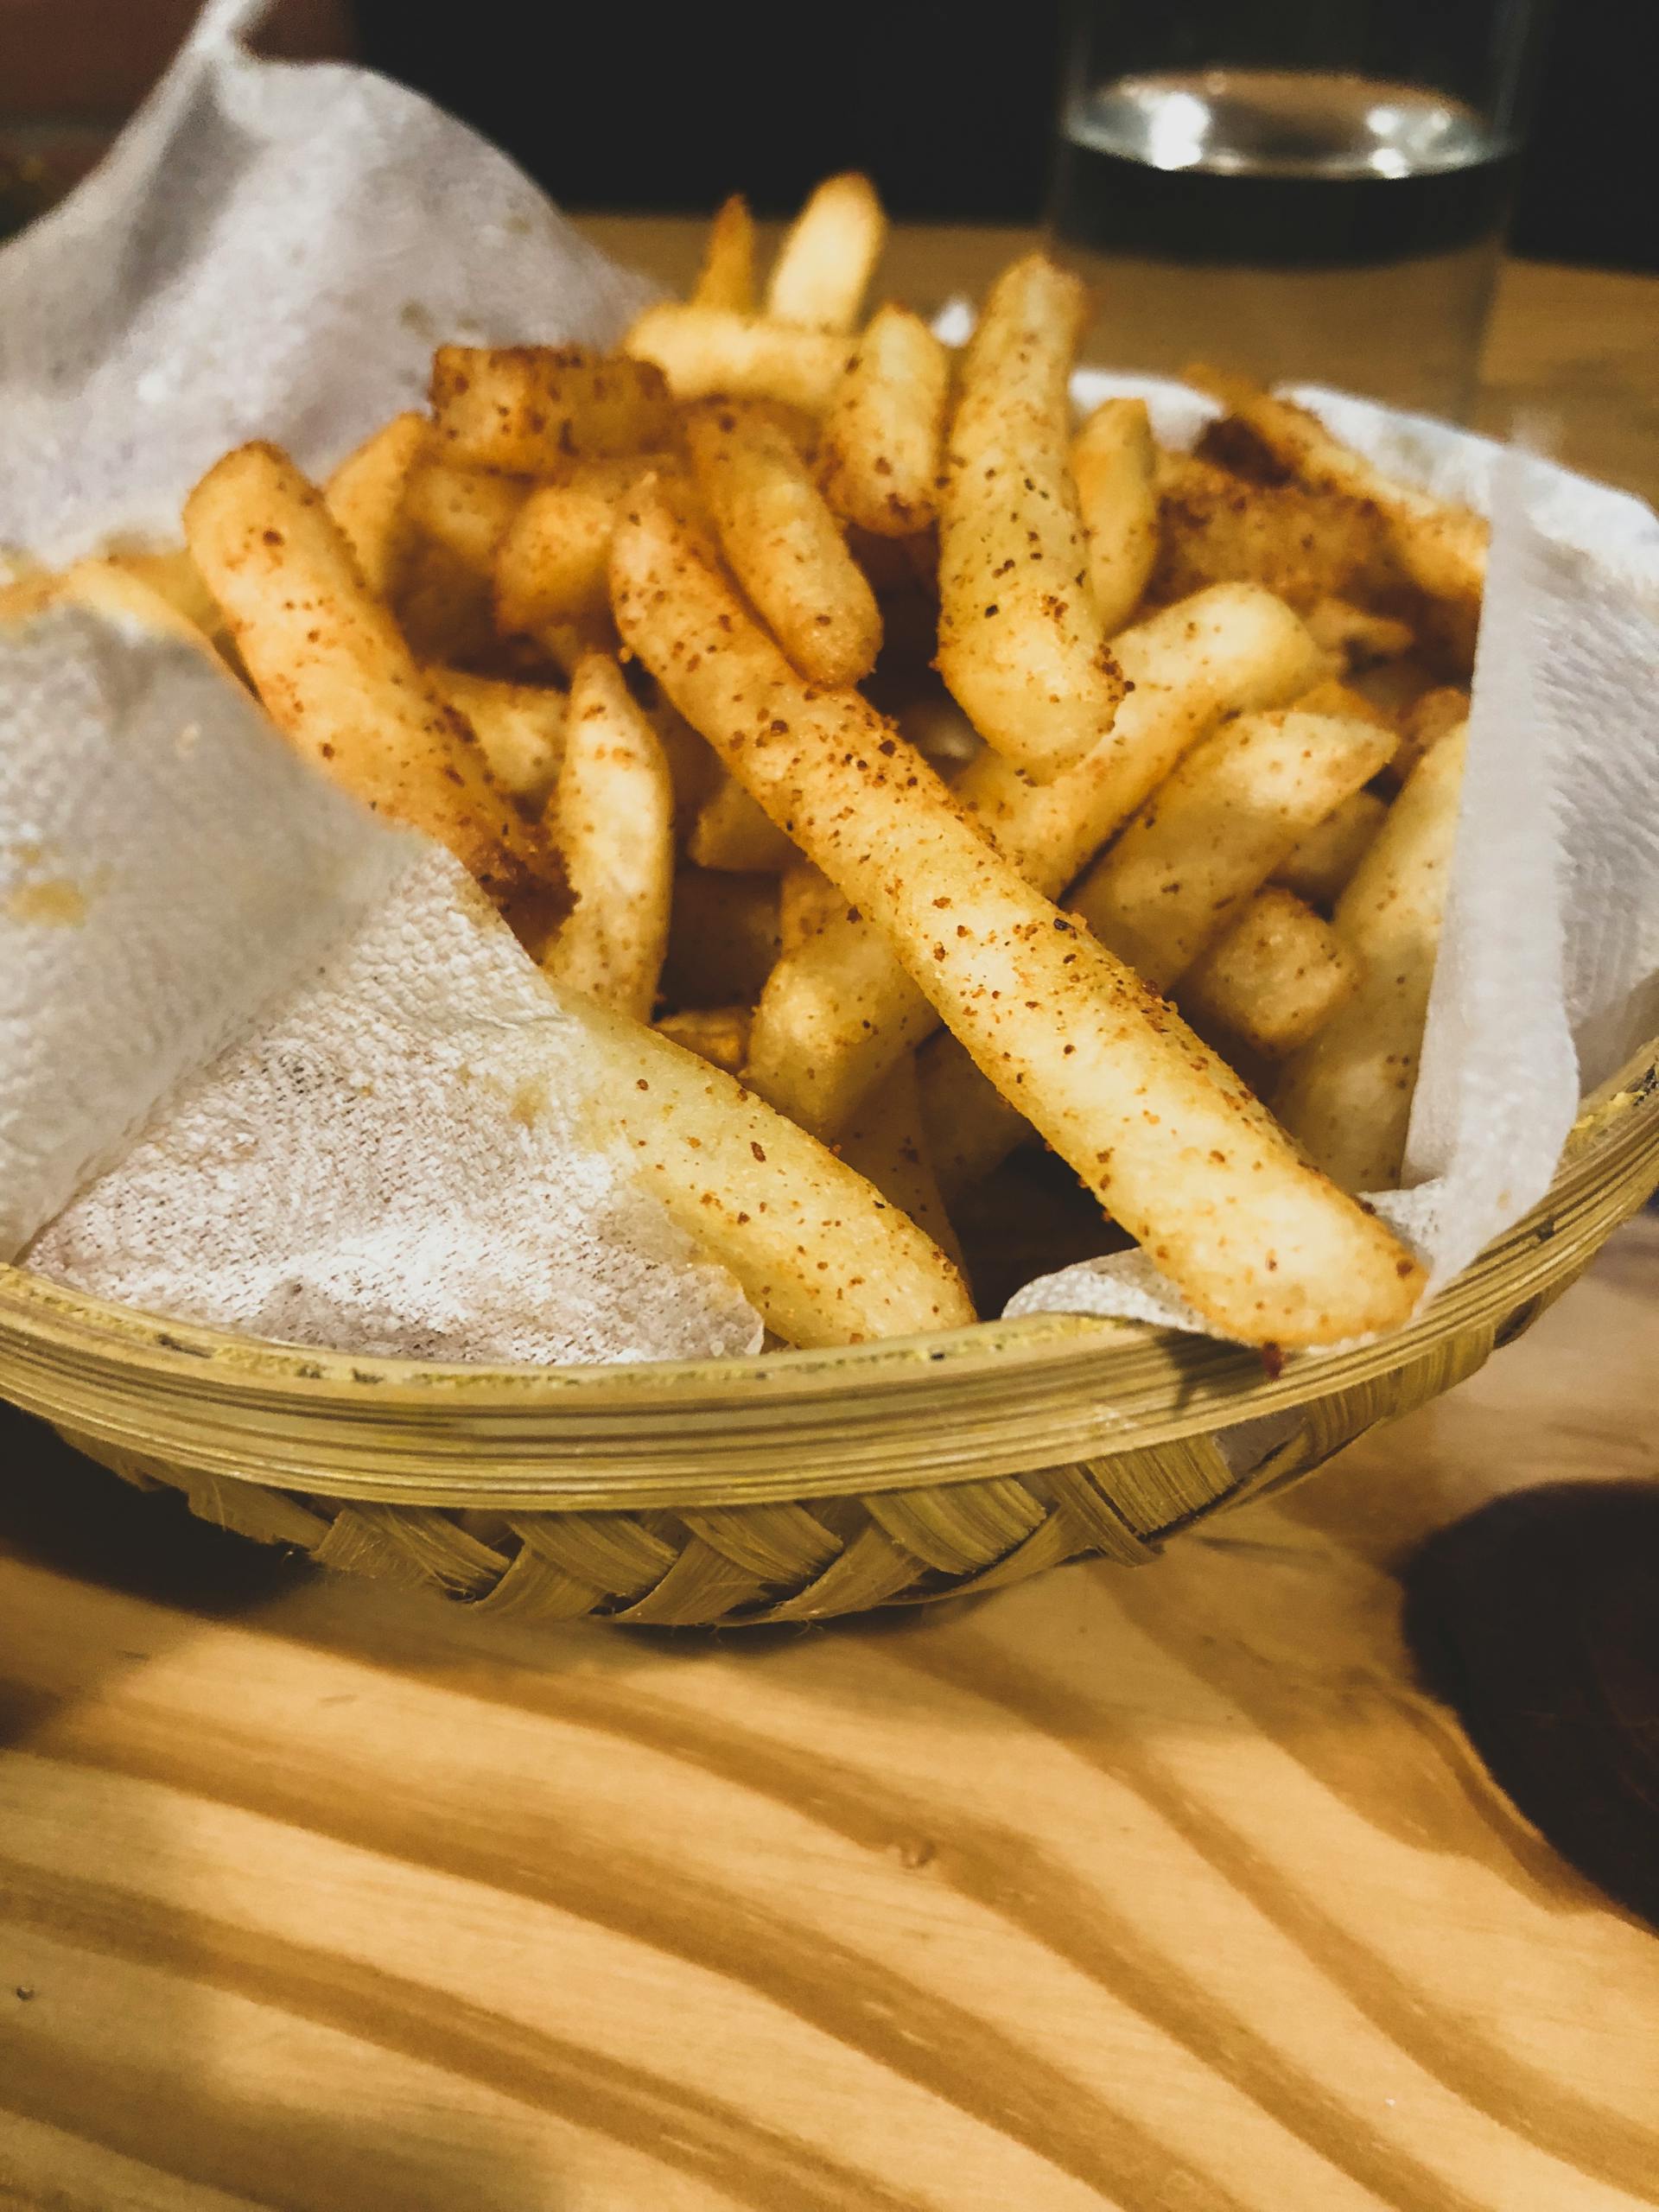 Fries in a basket | Source: Pexels